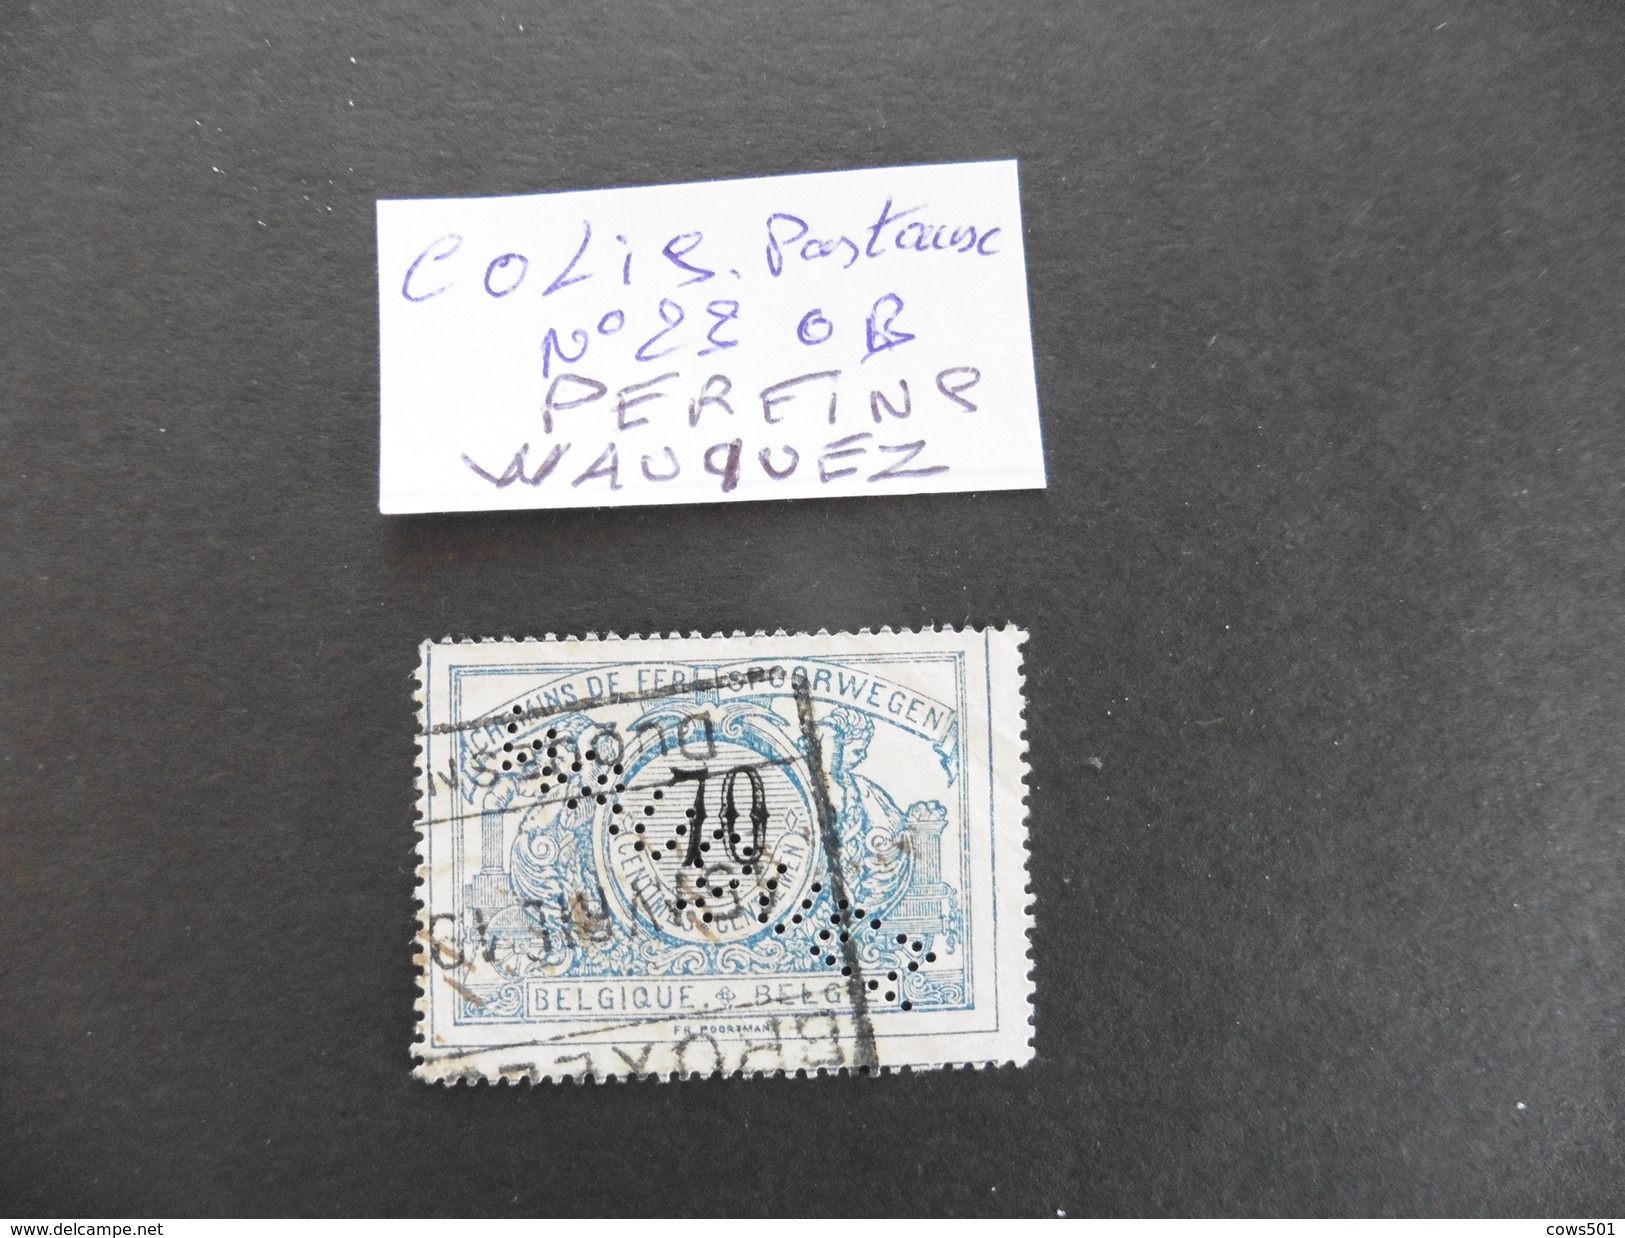 Belgique :Perfins :timbre Colis Postaux N°23  Perforé WAUQUEZ - Non Classés